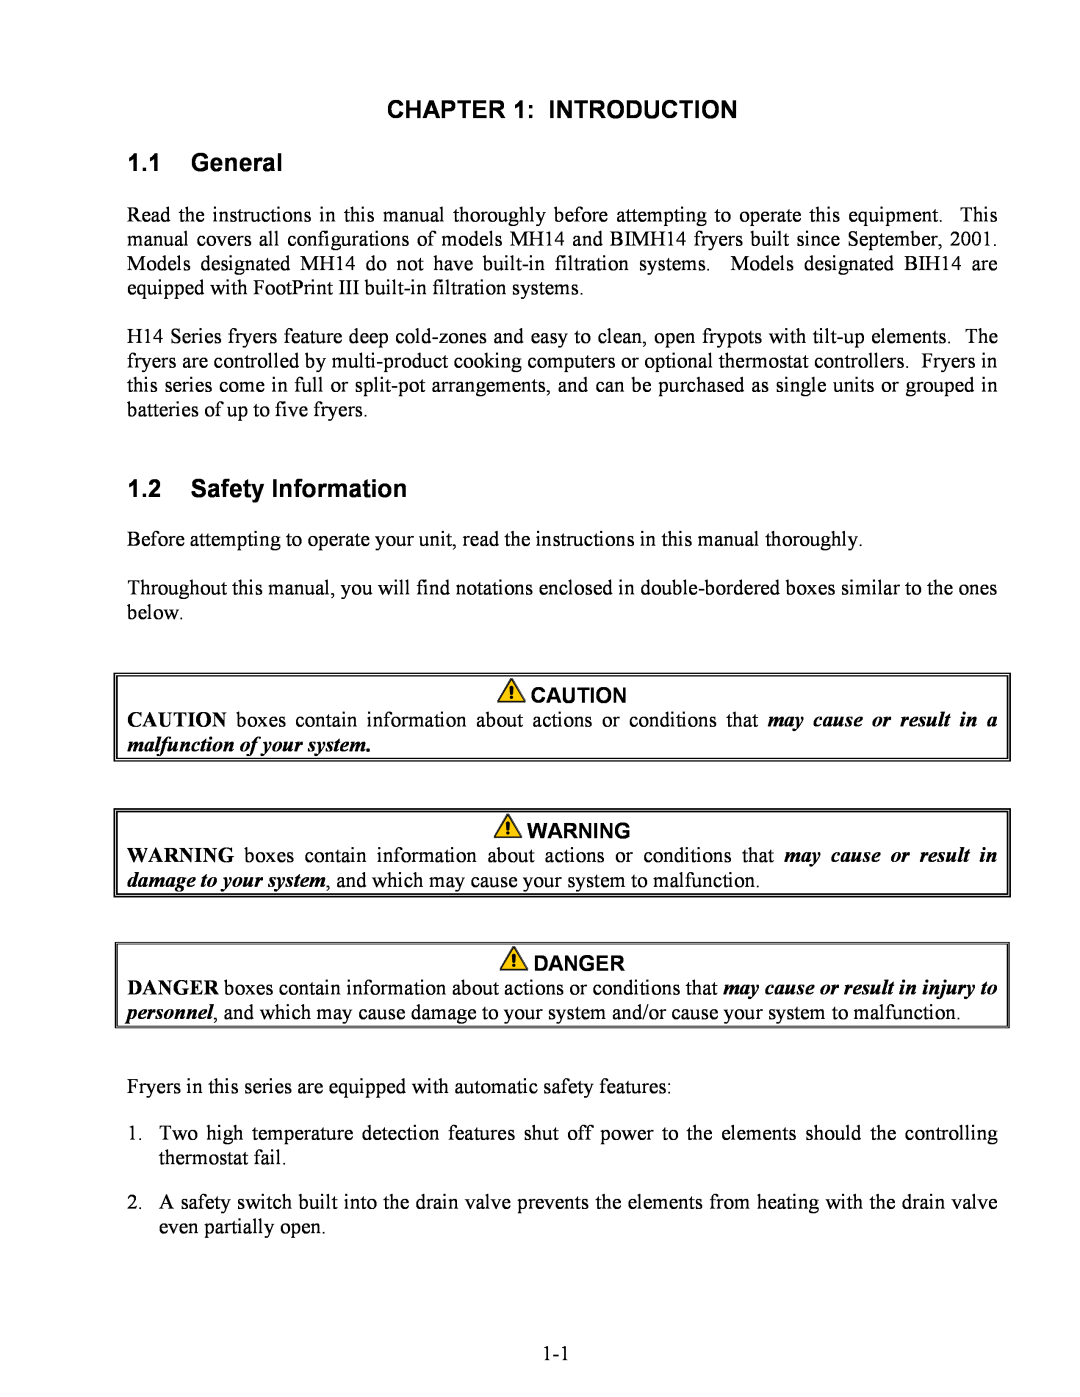 Frymaster MH14, BIH14 warranty INTRODUCTION 1.1General, 1.2Safety Information, Danger 